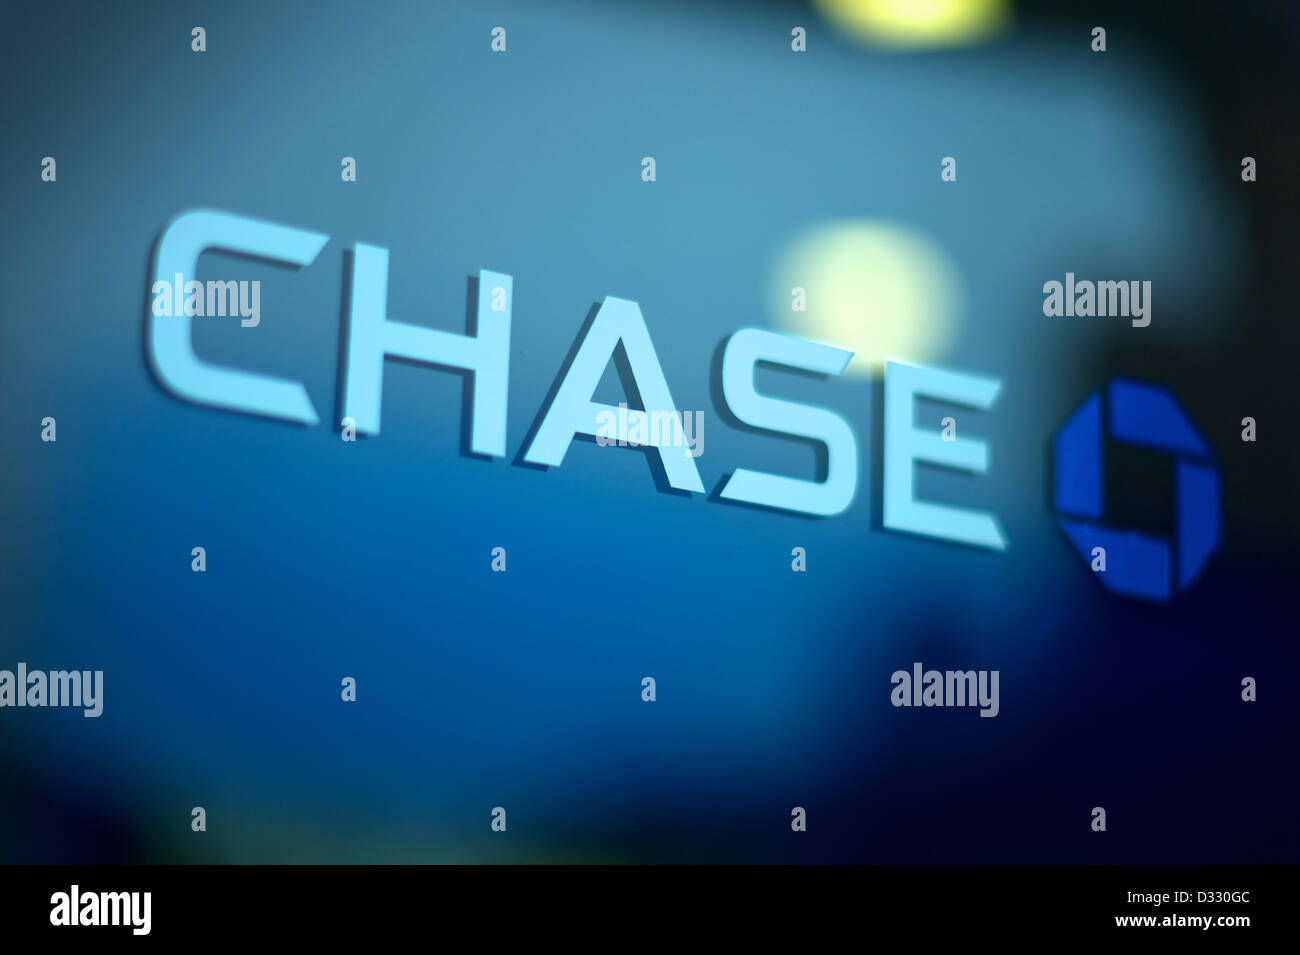 Nahaufnahme von CHASE Bank logo Stockfoto